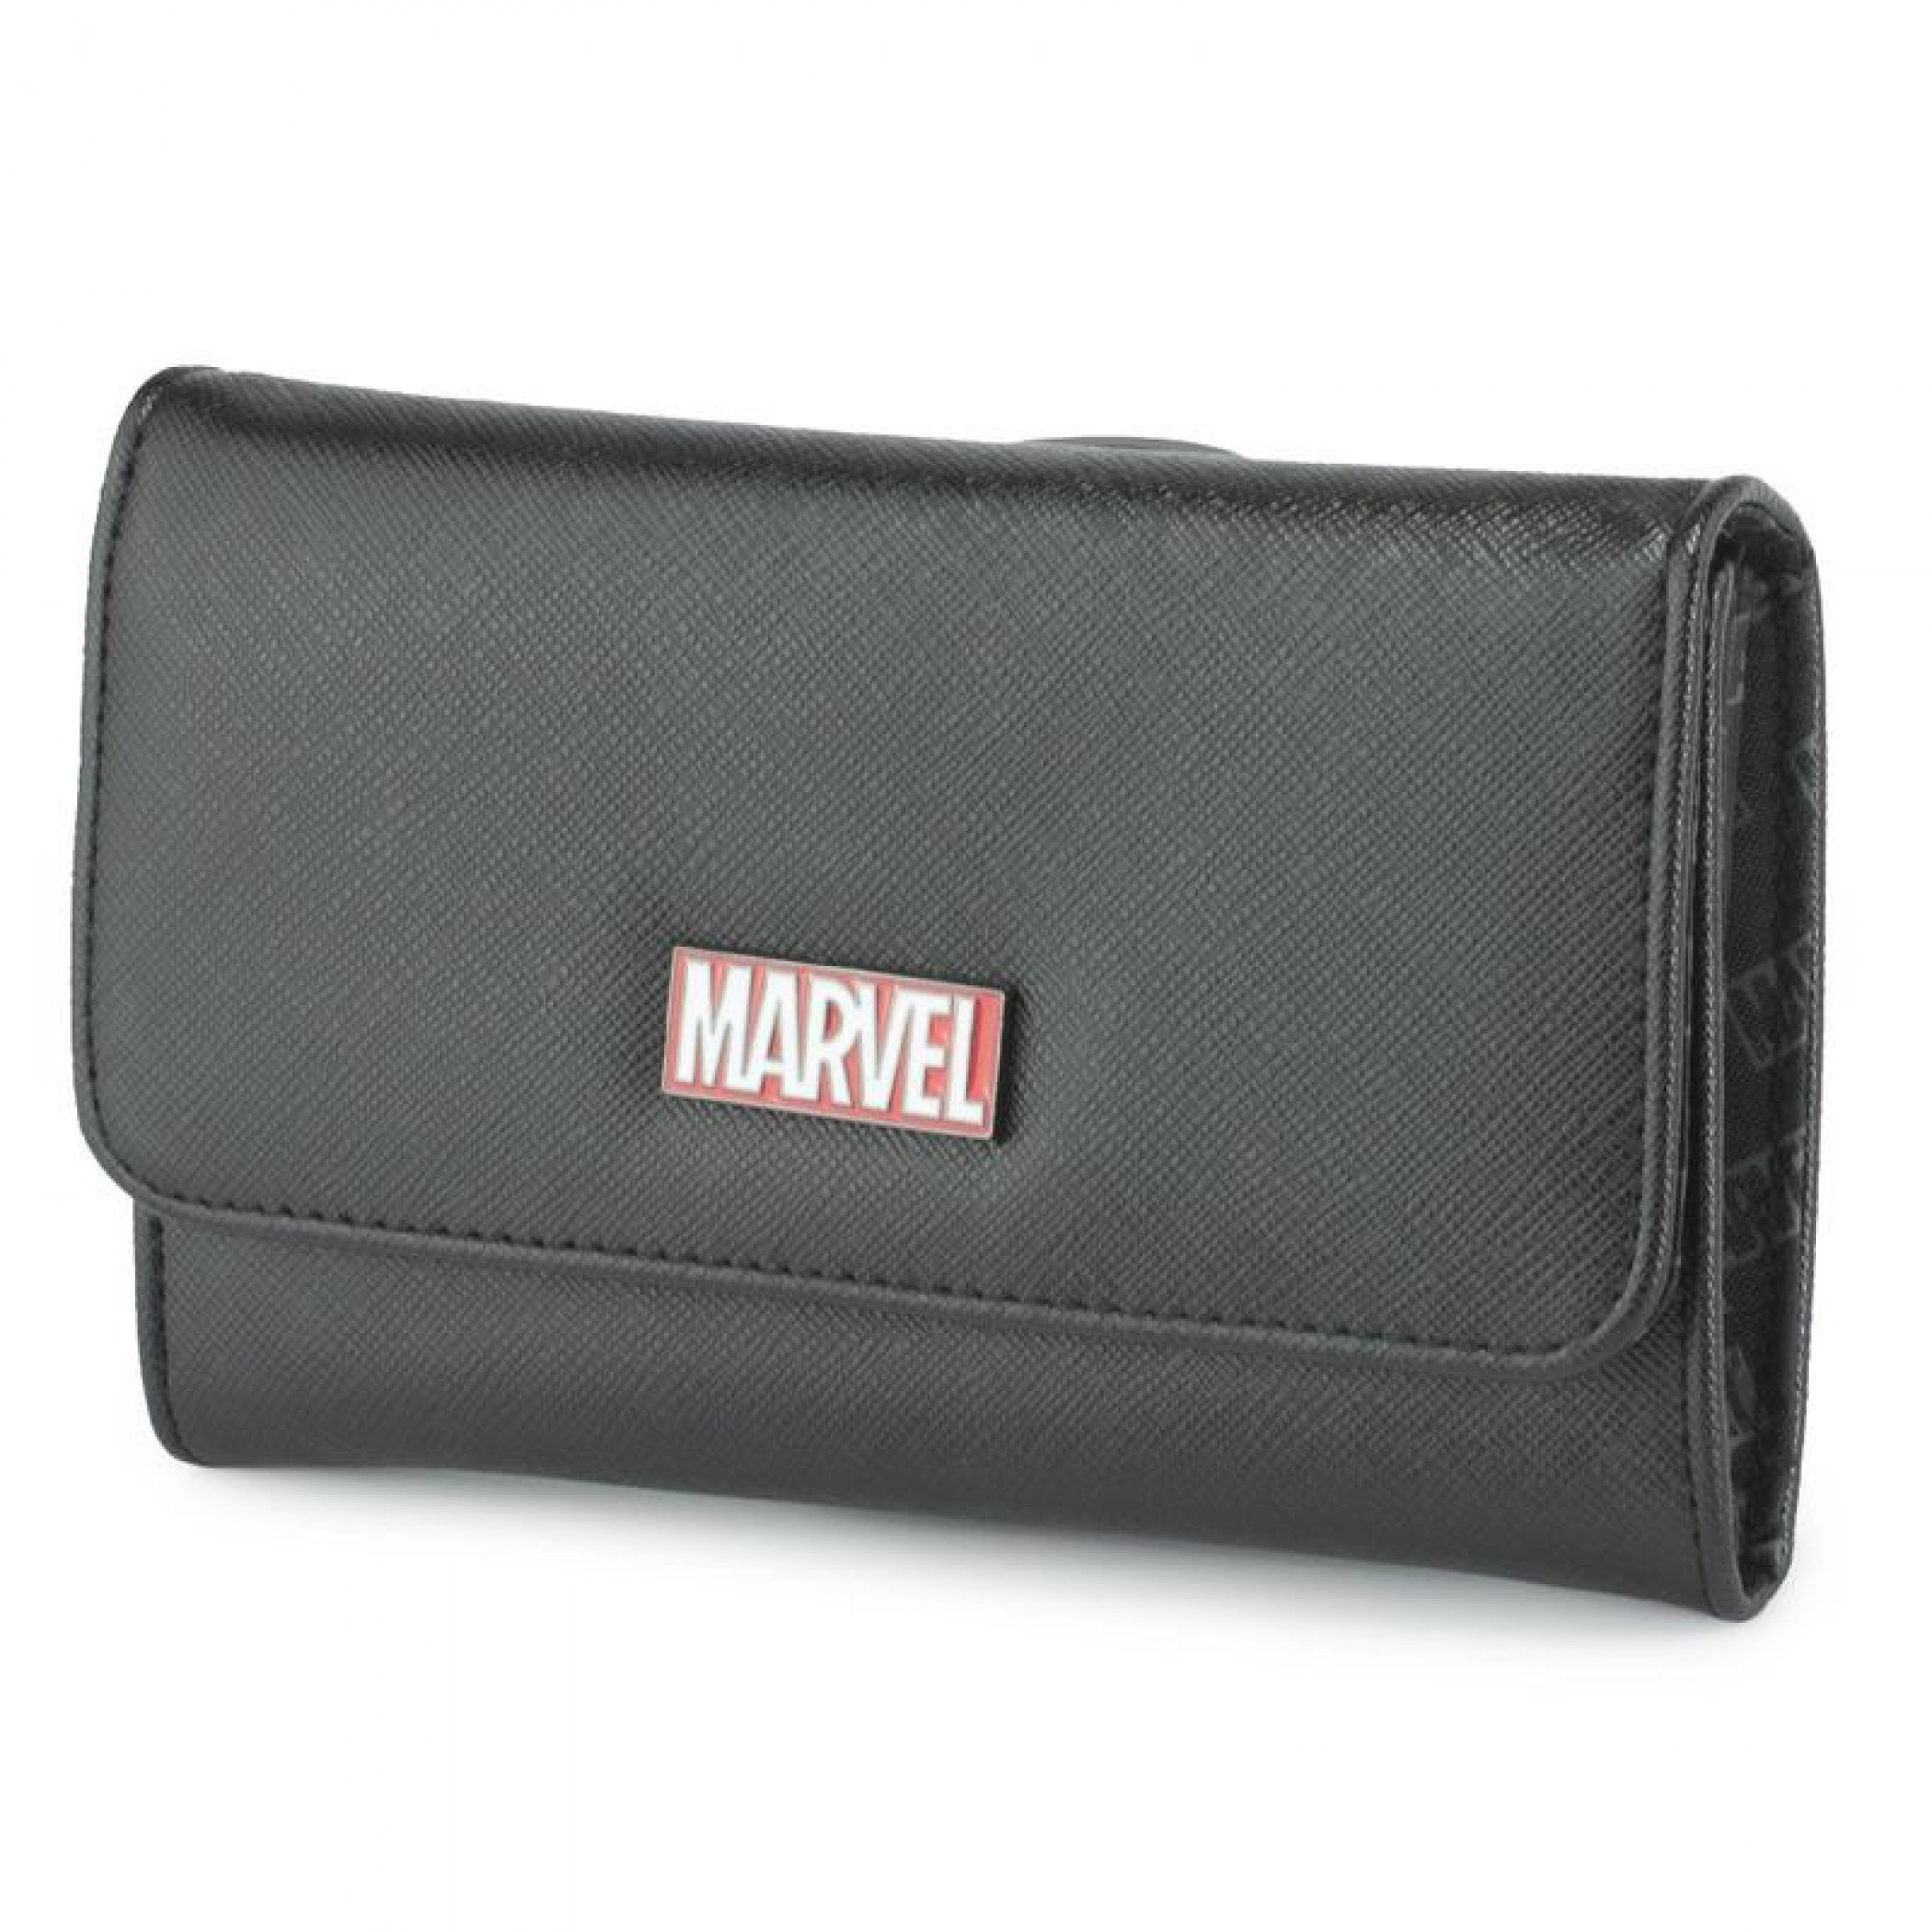 Marvel Brand Metal Emblem Fold Over Saffiano Wallet